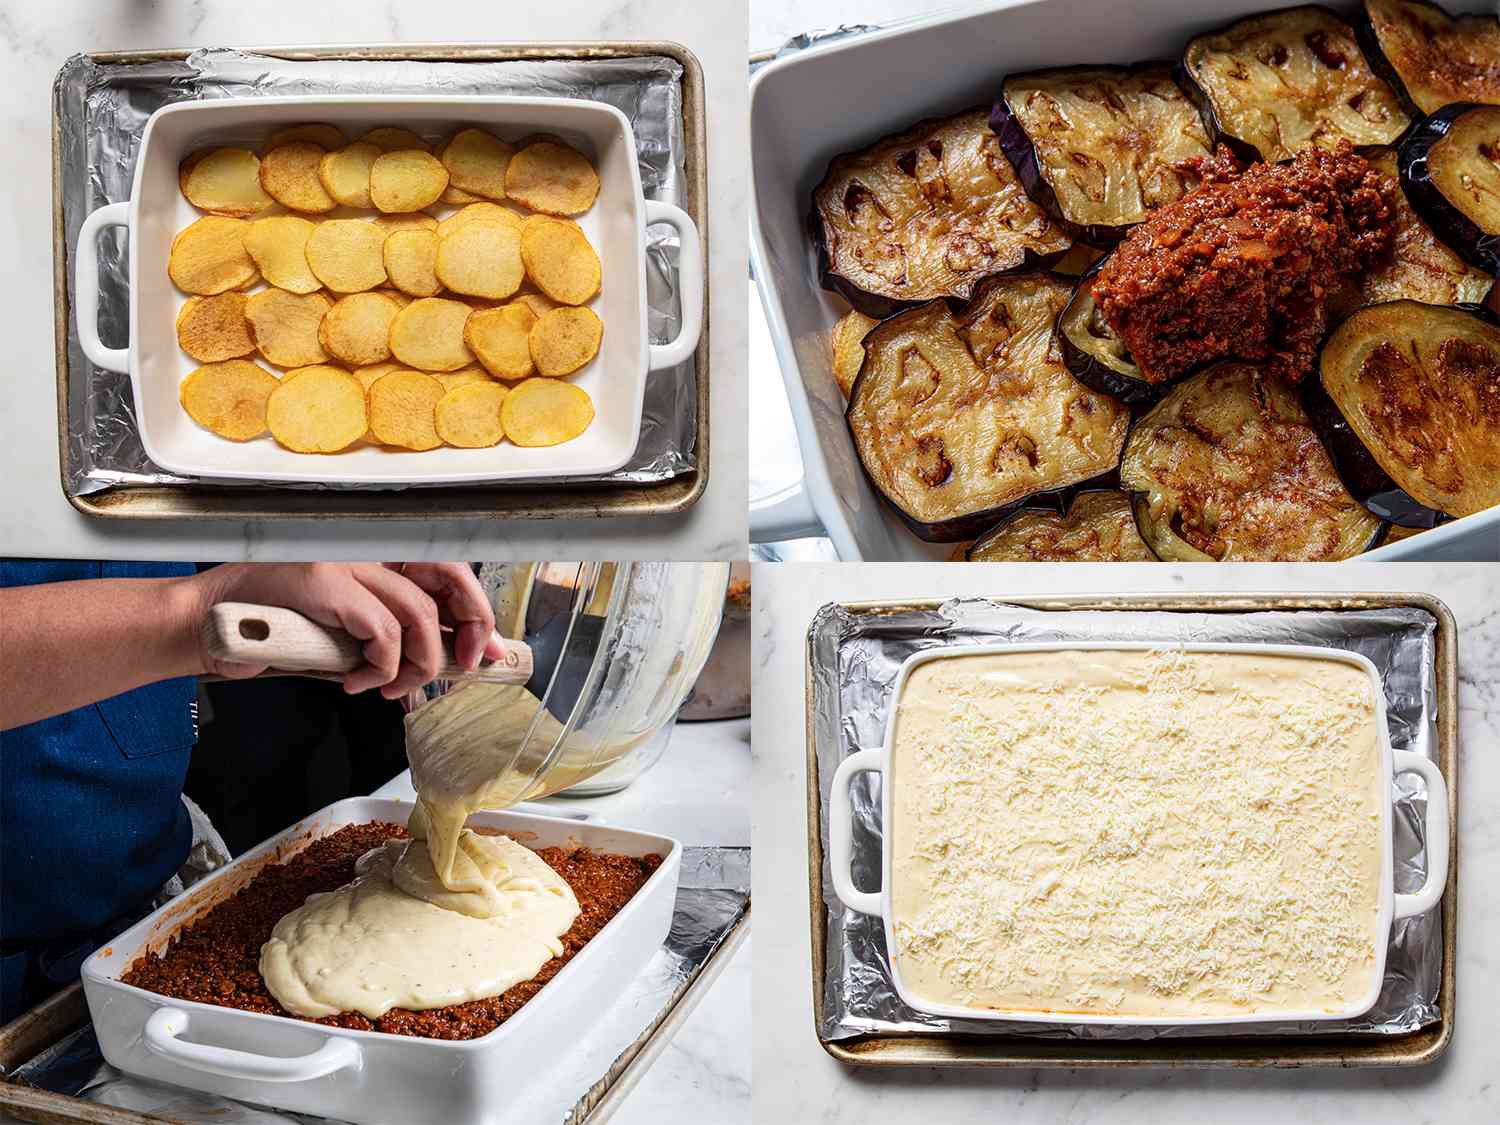 四幅图像拼贴。左上:烤盘底部排列着土豆。右上:第二层炸茄子中加入肉酱。左下:添加bÃ©chamel酱层到薄片。右下:烤盘上放着奶酪的穆萨卡。